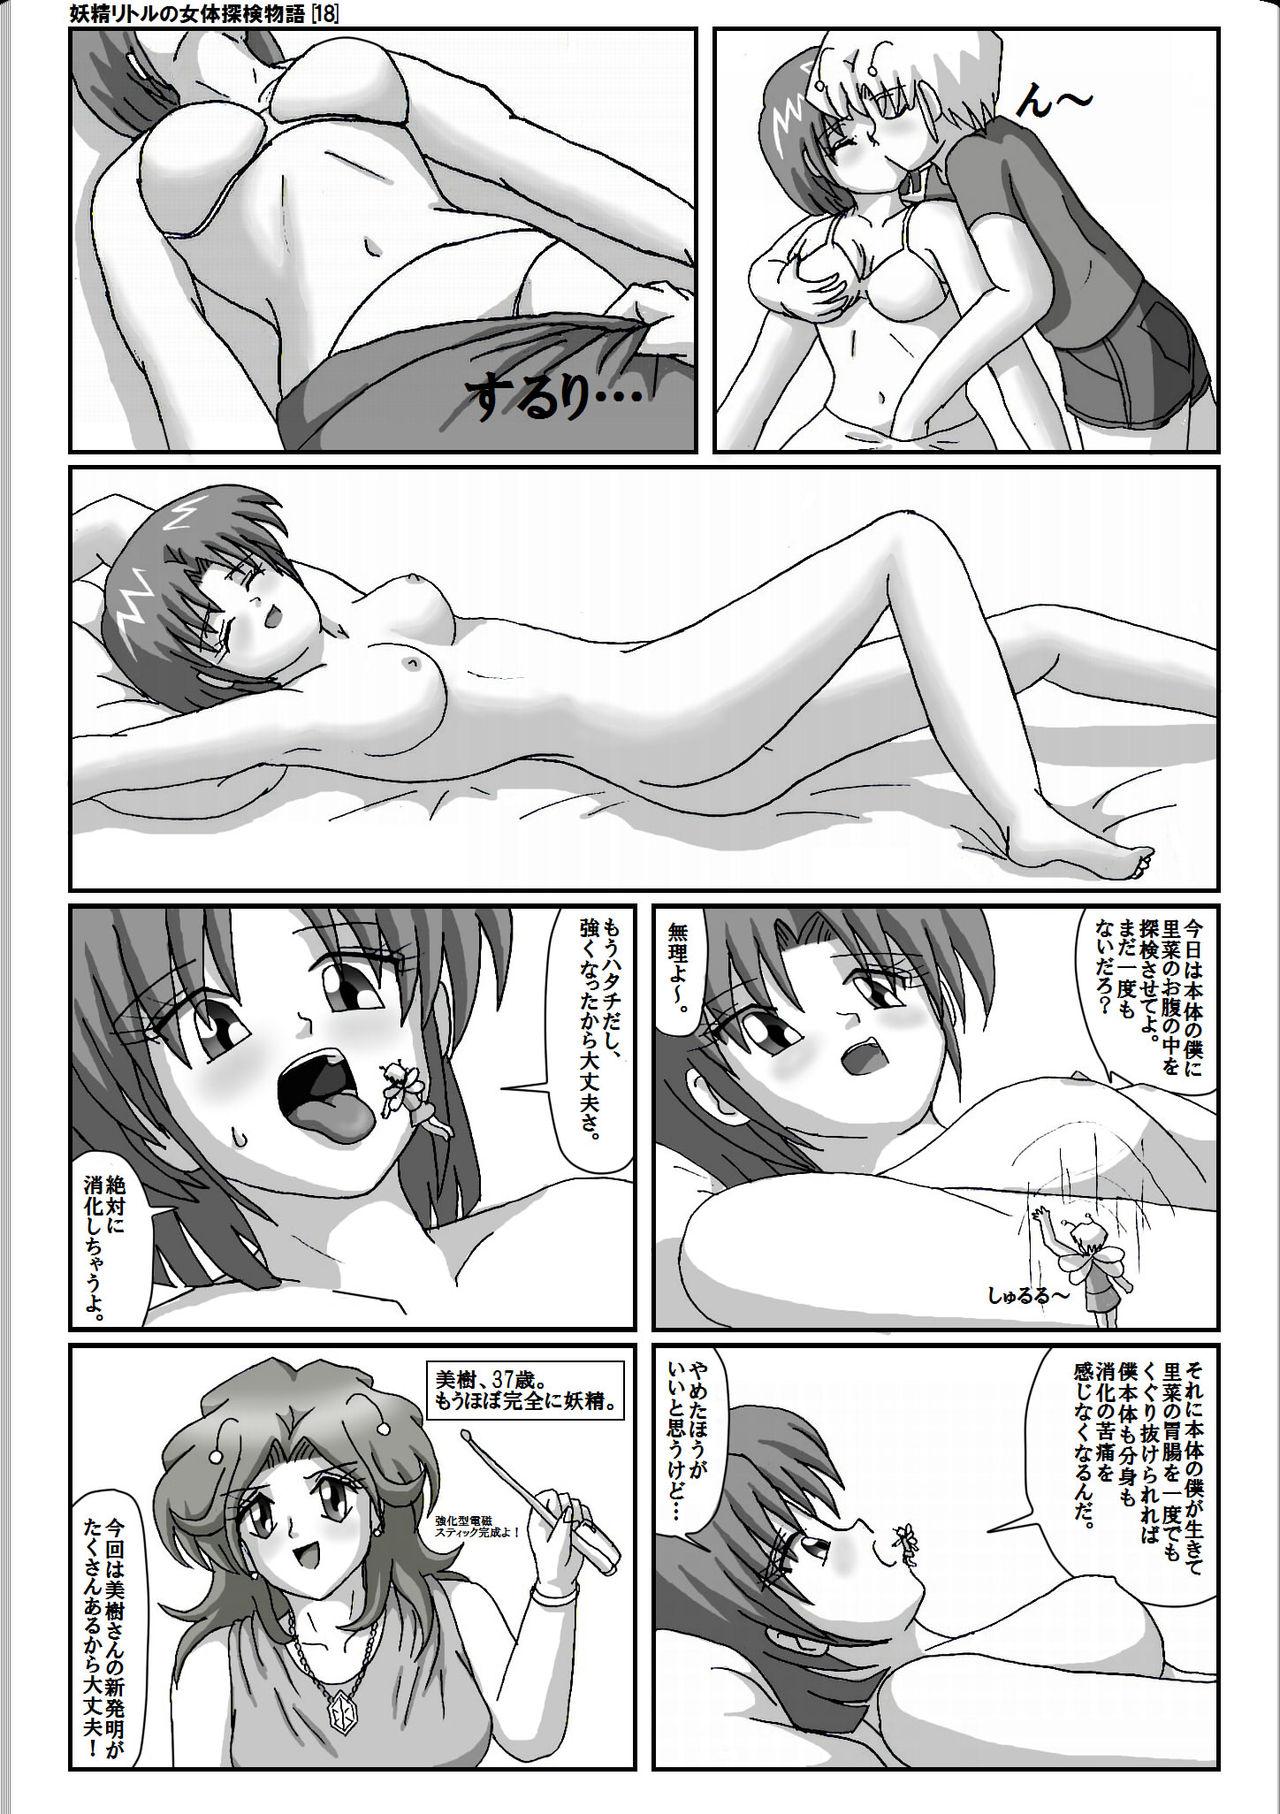 Exhib Yousei ritoru no nyoutai tanken monogatari Str8 - Page 4